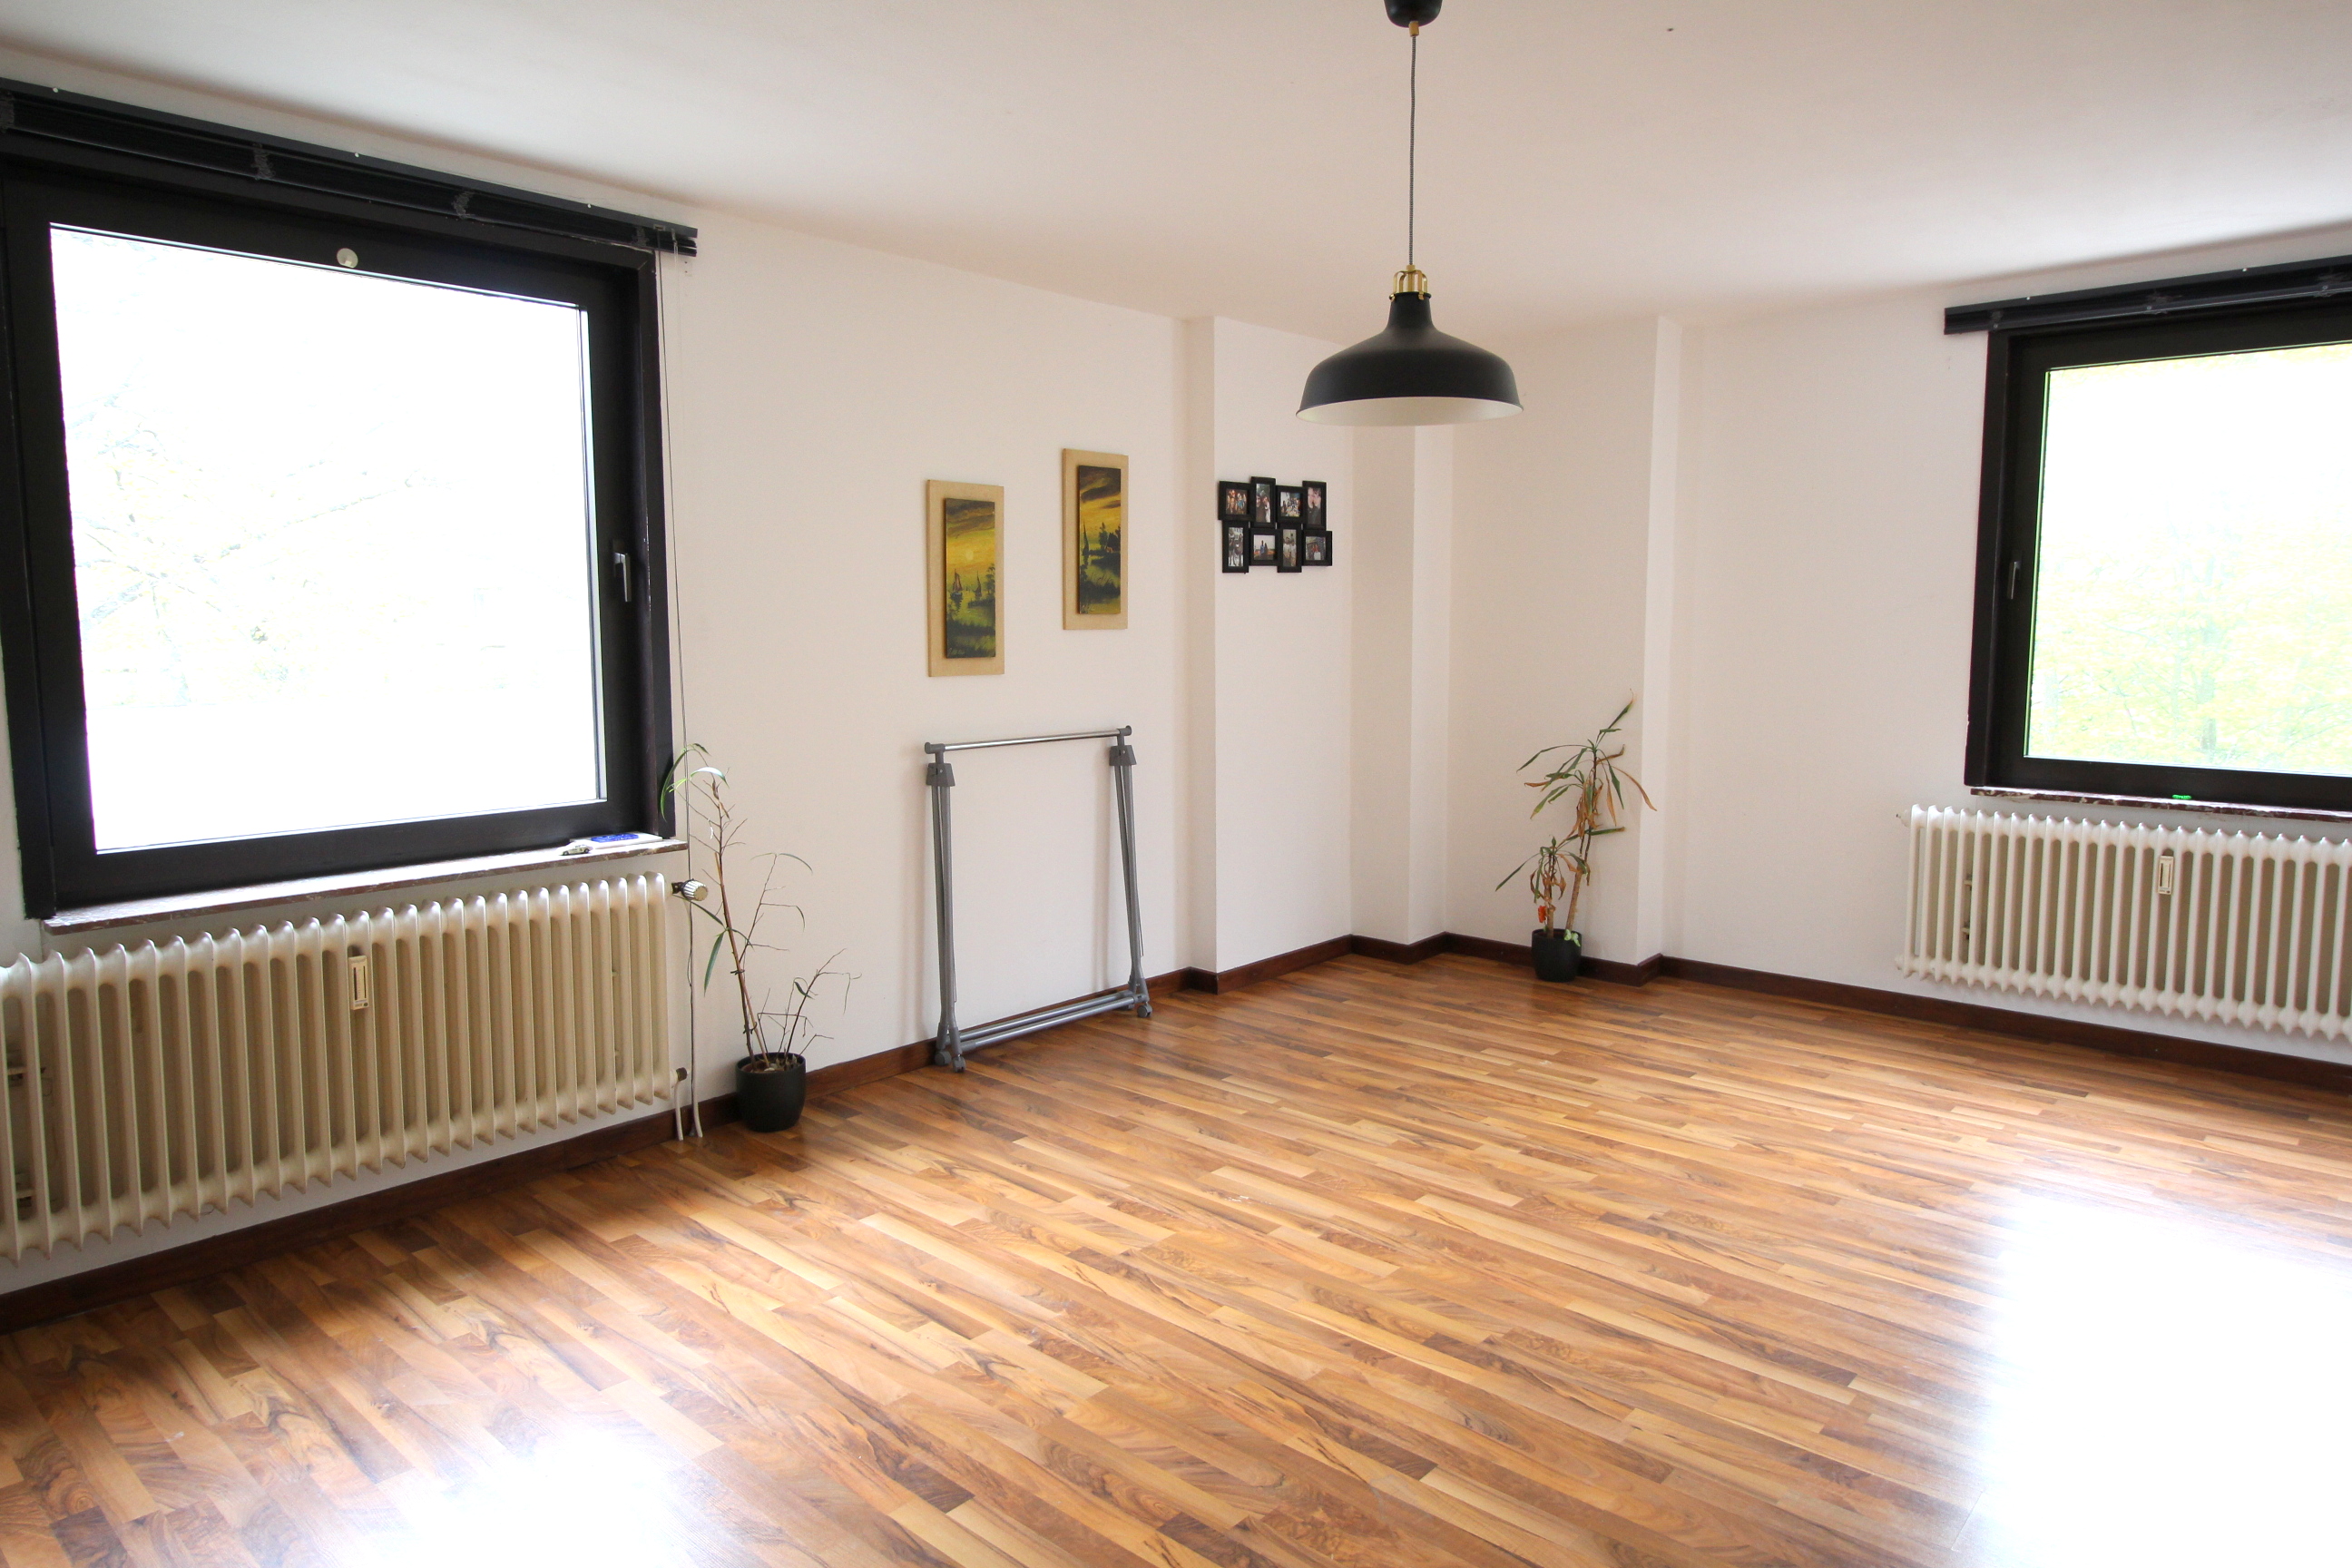 Sonnige und günstige Wohnung in zentraler Lage in Bothfeld mit modernem Wannenbad und viel Platz.